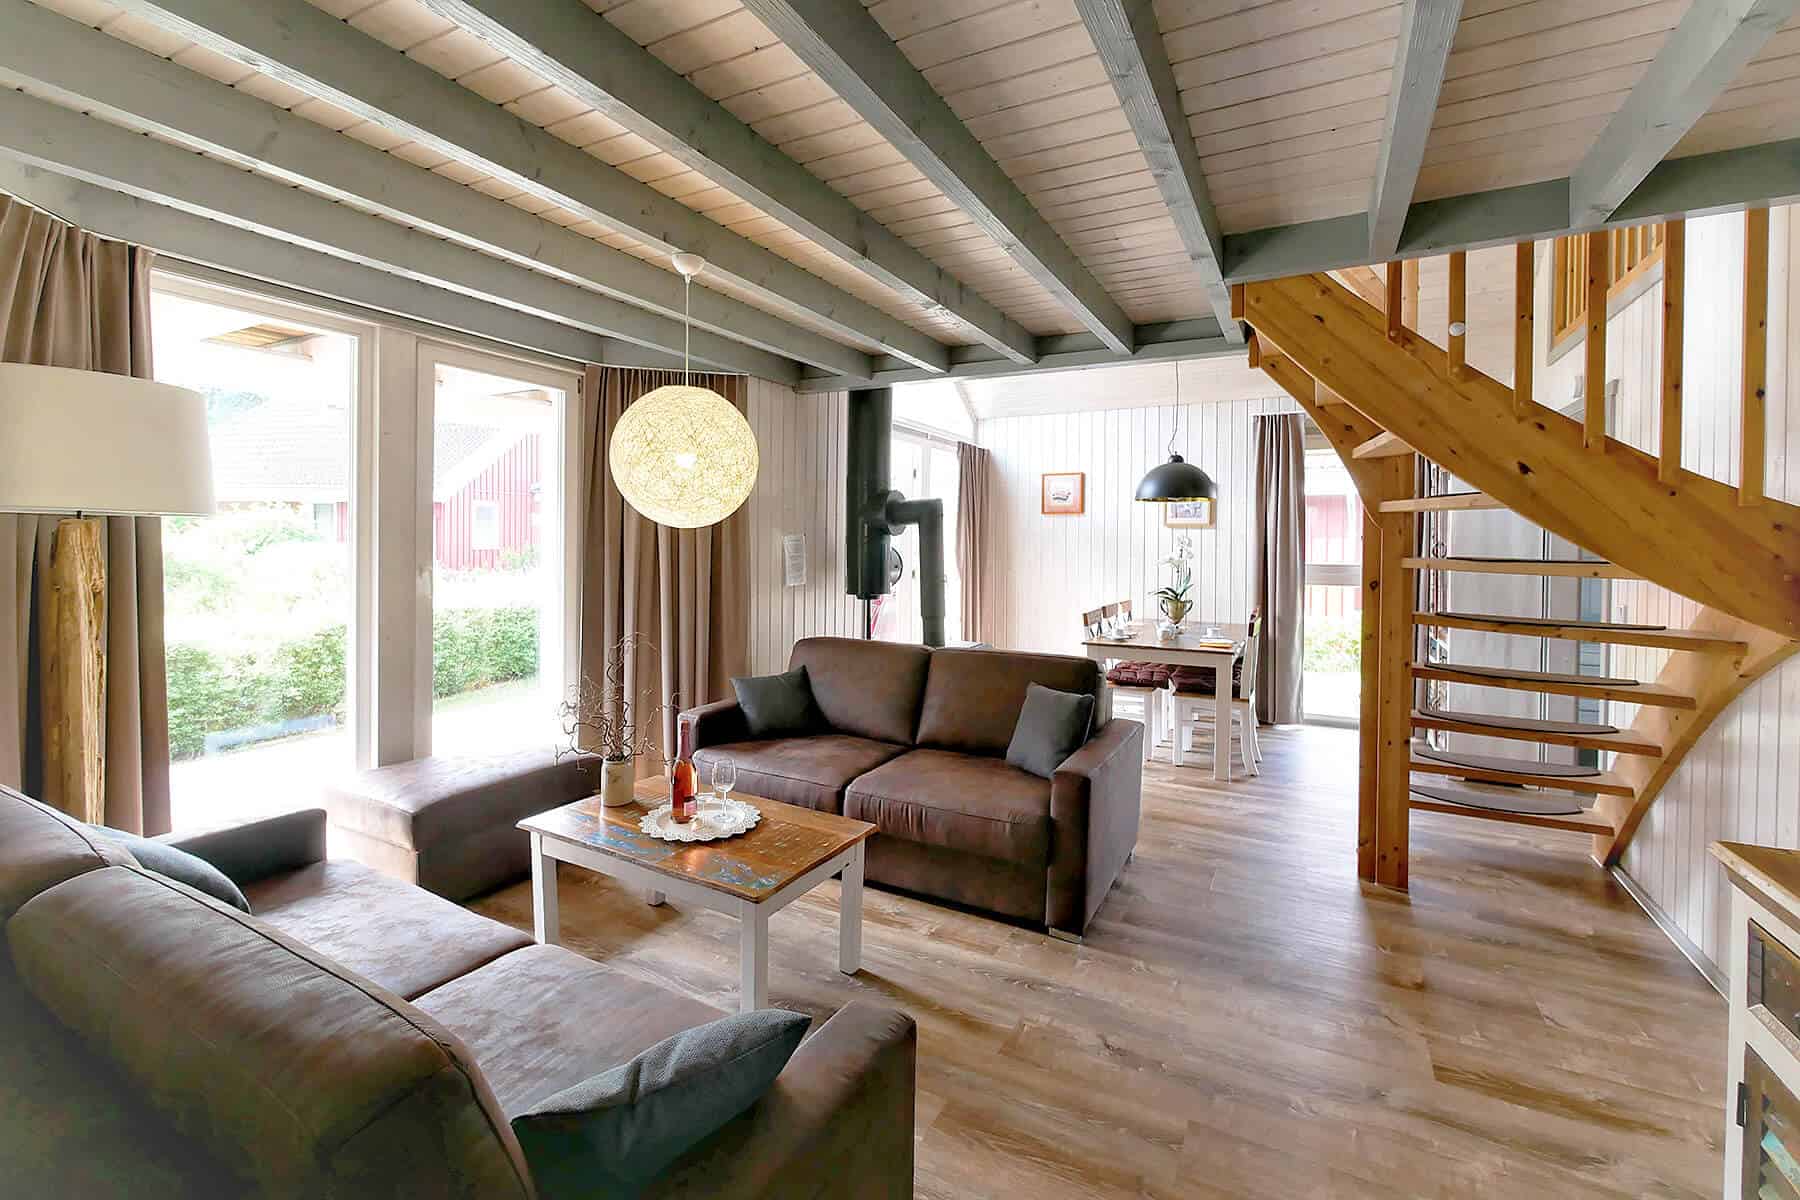 Ferienhaus Seeperle XL in Wendisch Rietz. Ansicht des Wohnbereiches im Erdgeschoss mit Esstisch und Couch.